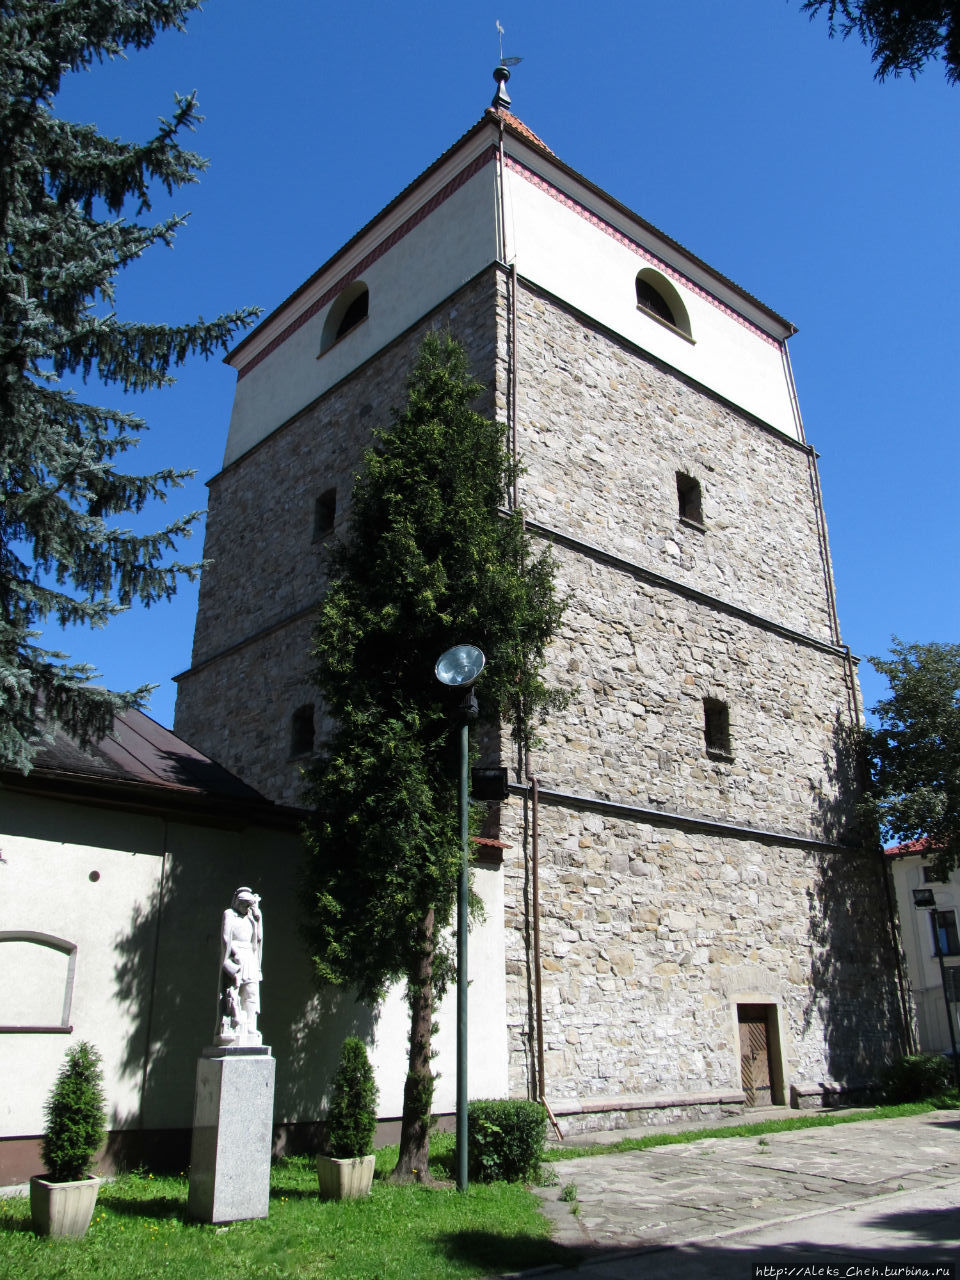 Колокольня – построенная из камня в 1723-1724 годах на месте предыдущей деревянной с 1582 года, которая сгорела во время пожара города в 1721 г. Живец, Польша